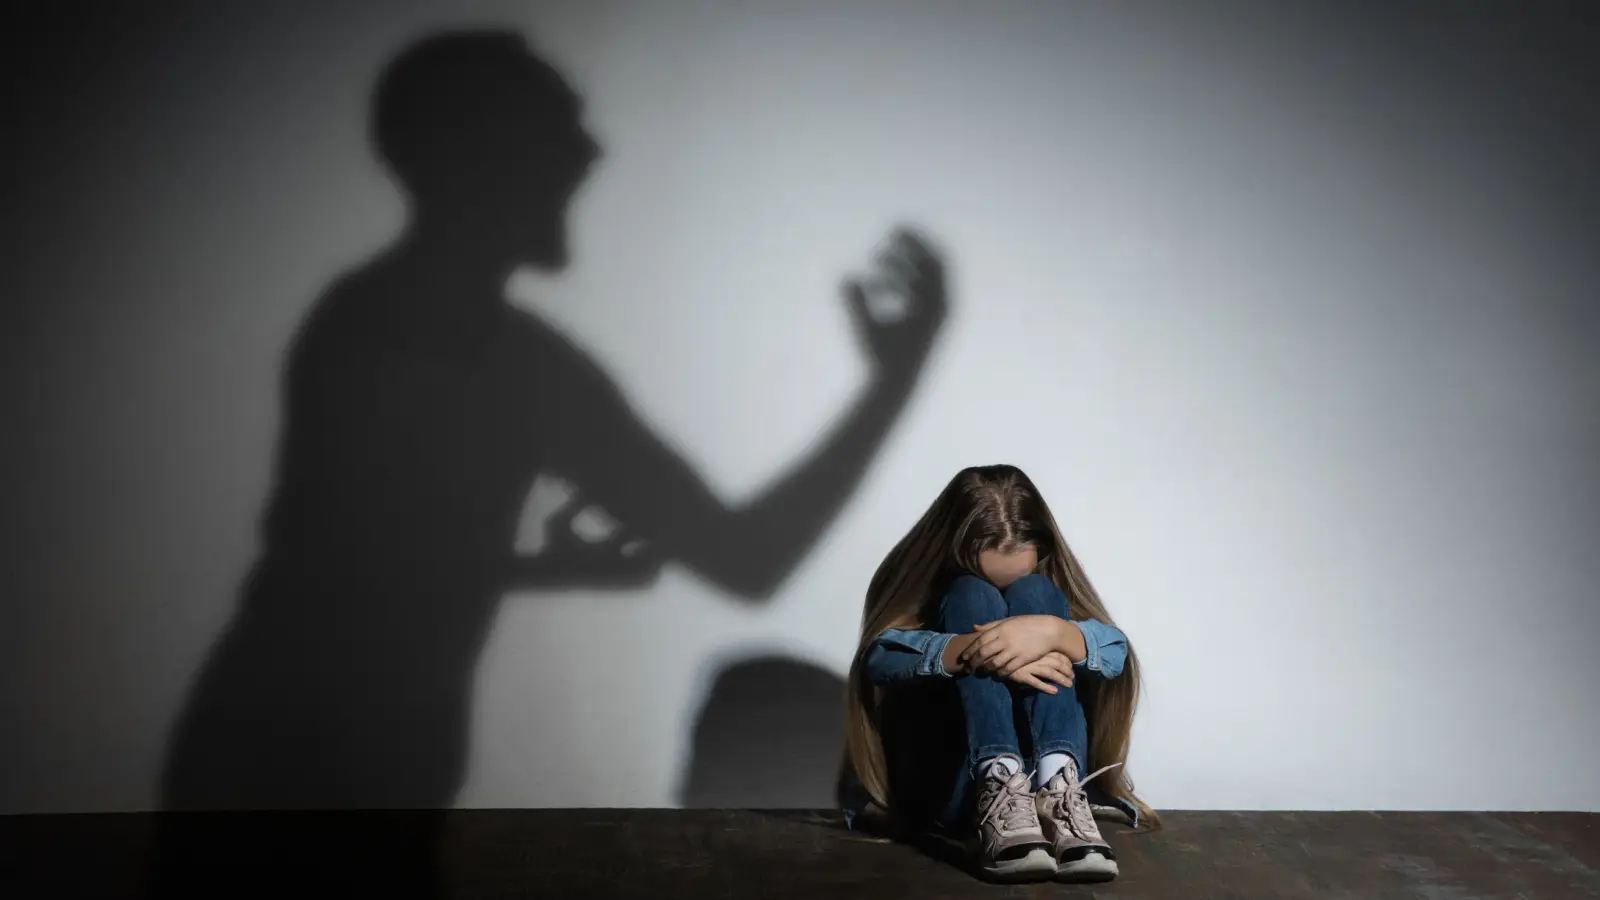 ما أنواع العنف الجسدي ضد الأطفال؟ وما أضراره؟